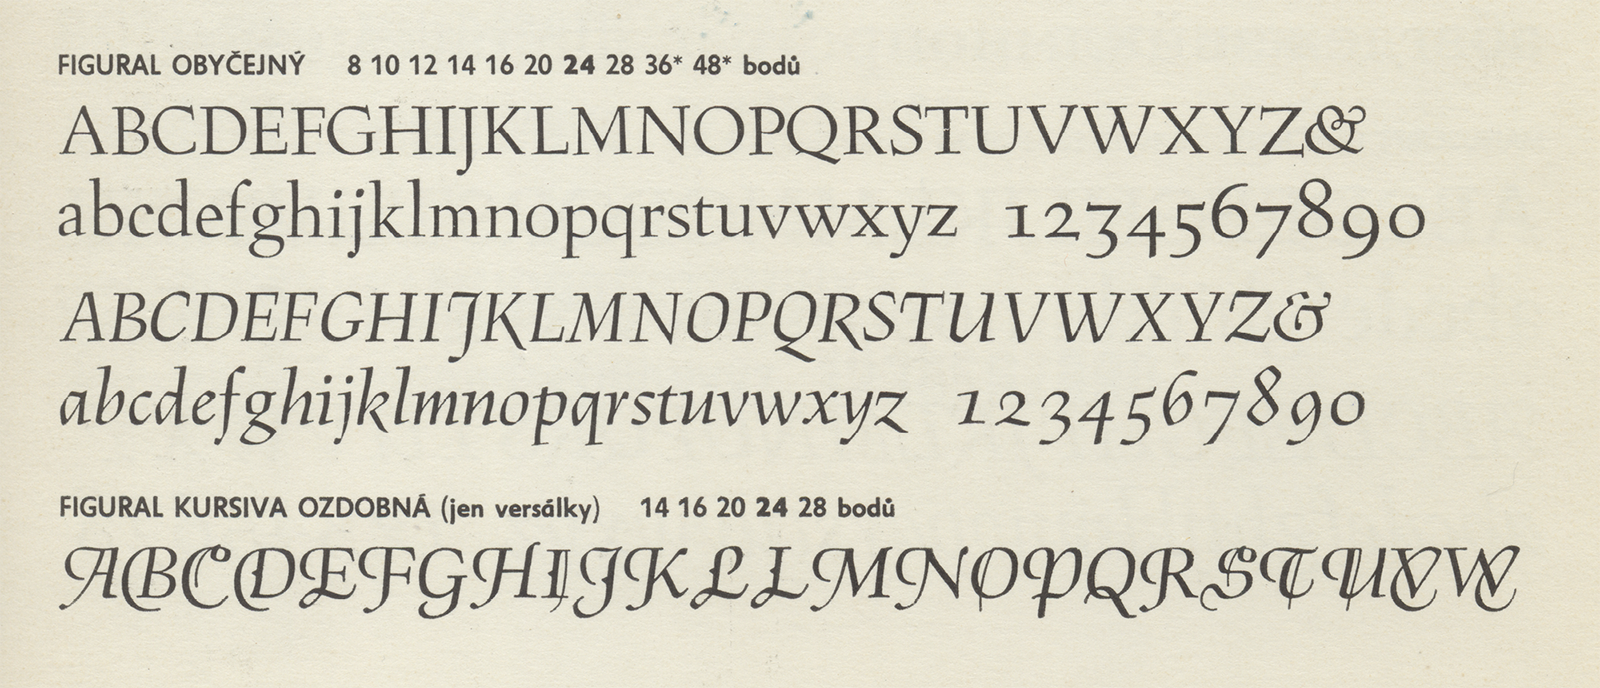 Figural Obyčejný a Figural Kurziva ozdobná ze vzorníku Ručních písem, včetně škály velikostí, v nichž se vyráběl. Grafotechna, n. p., 50. léta